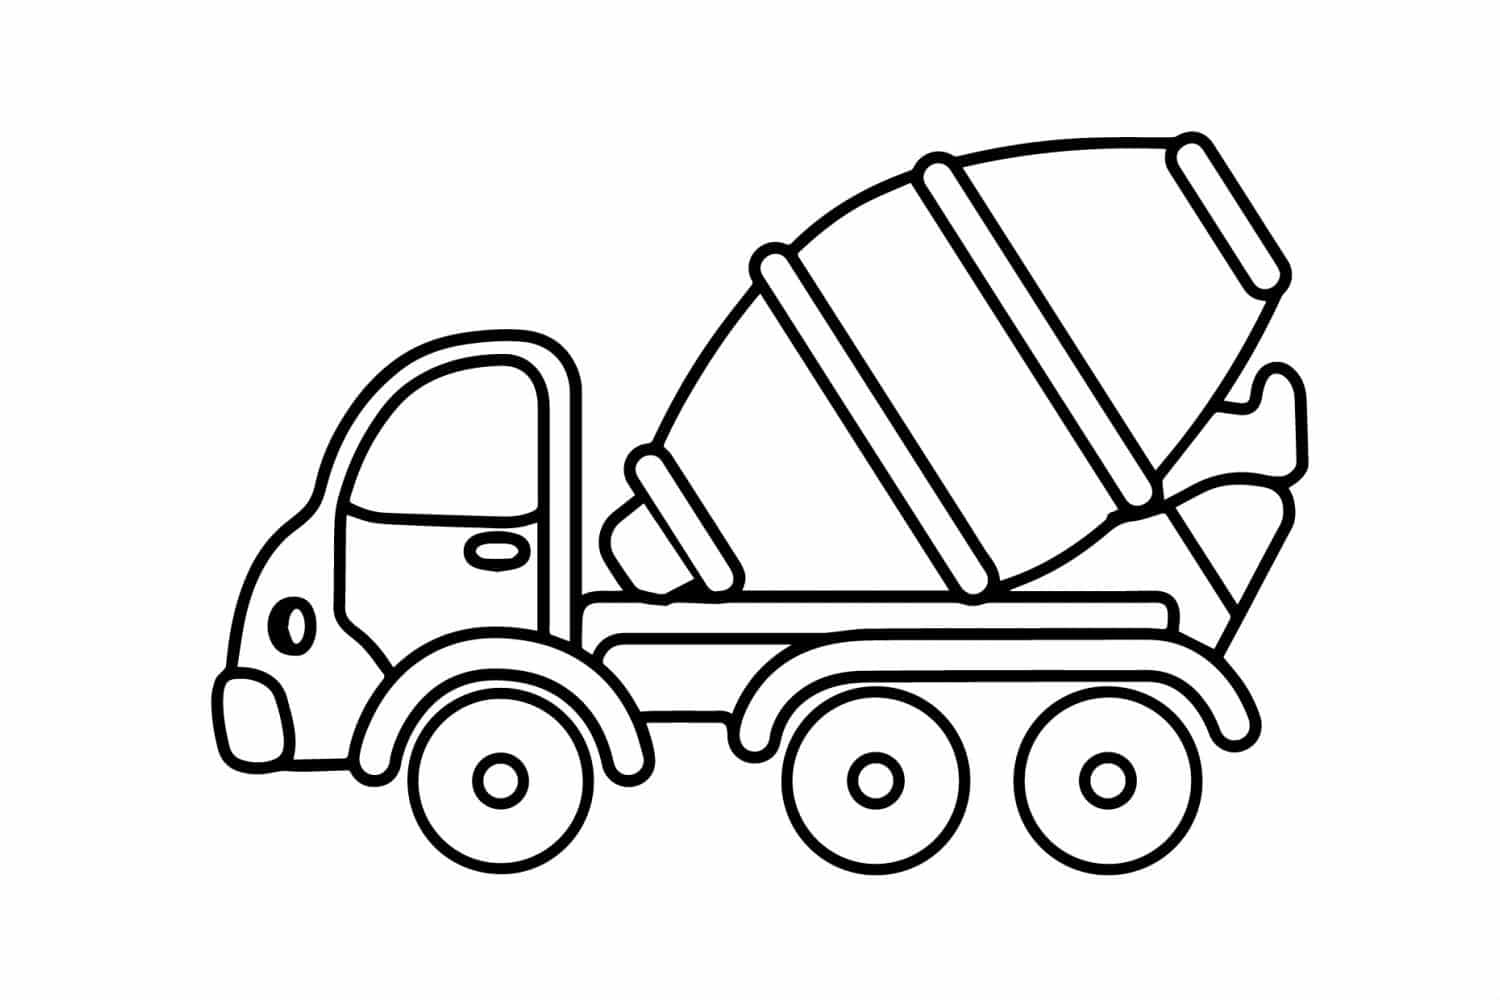 דף צביעה עם משאית בטון